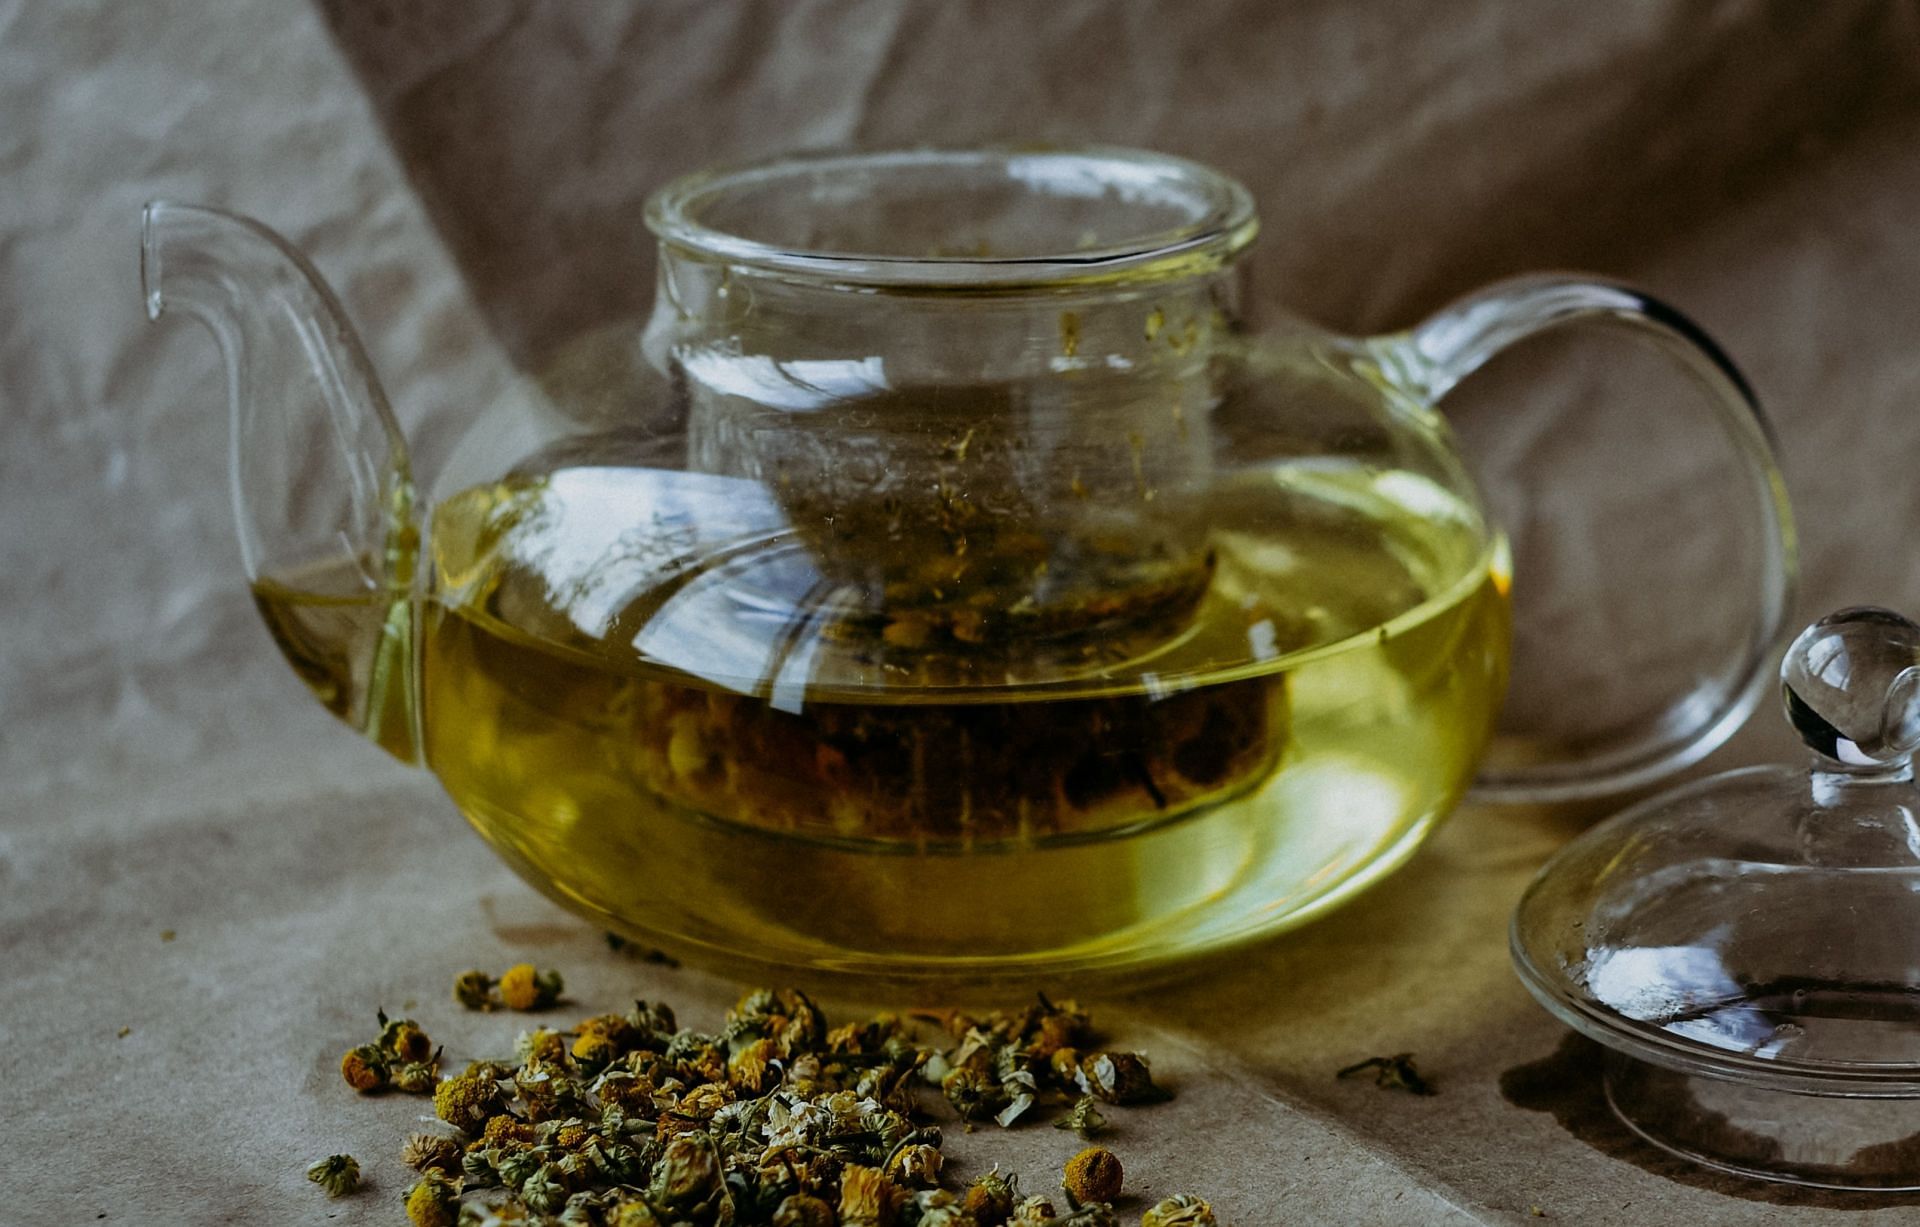 Herbal teas to avoid (Image via Unsplash/Irene)